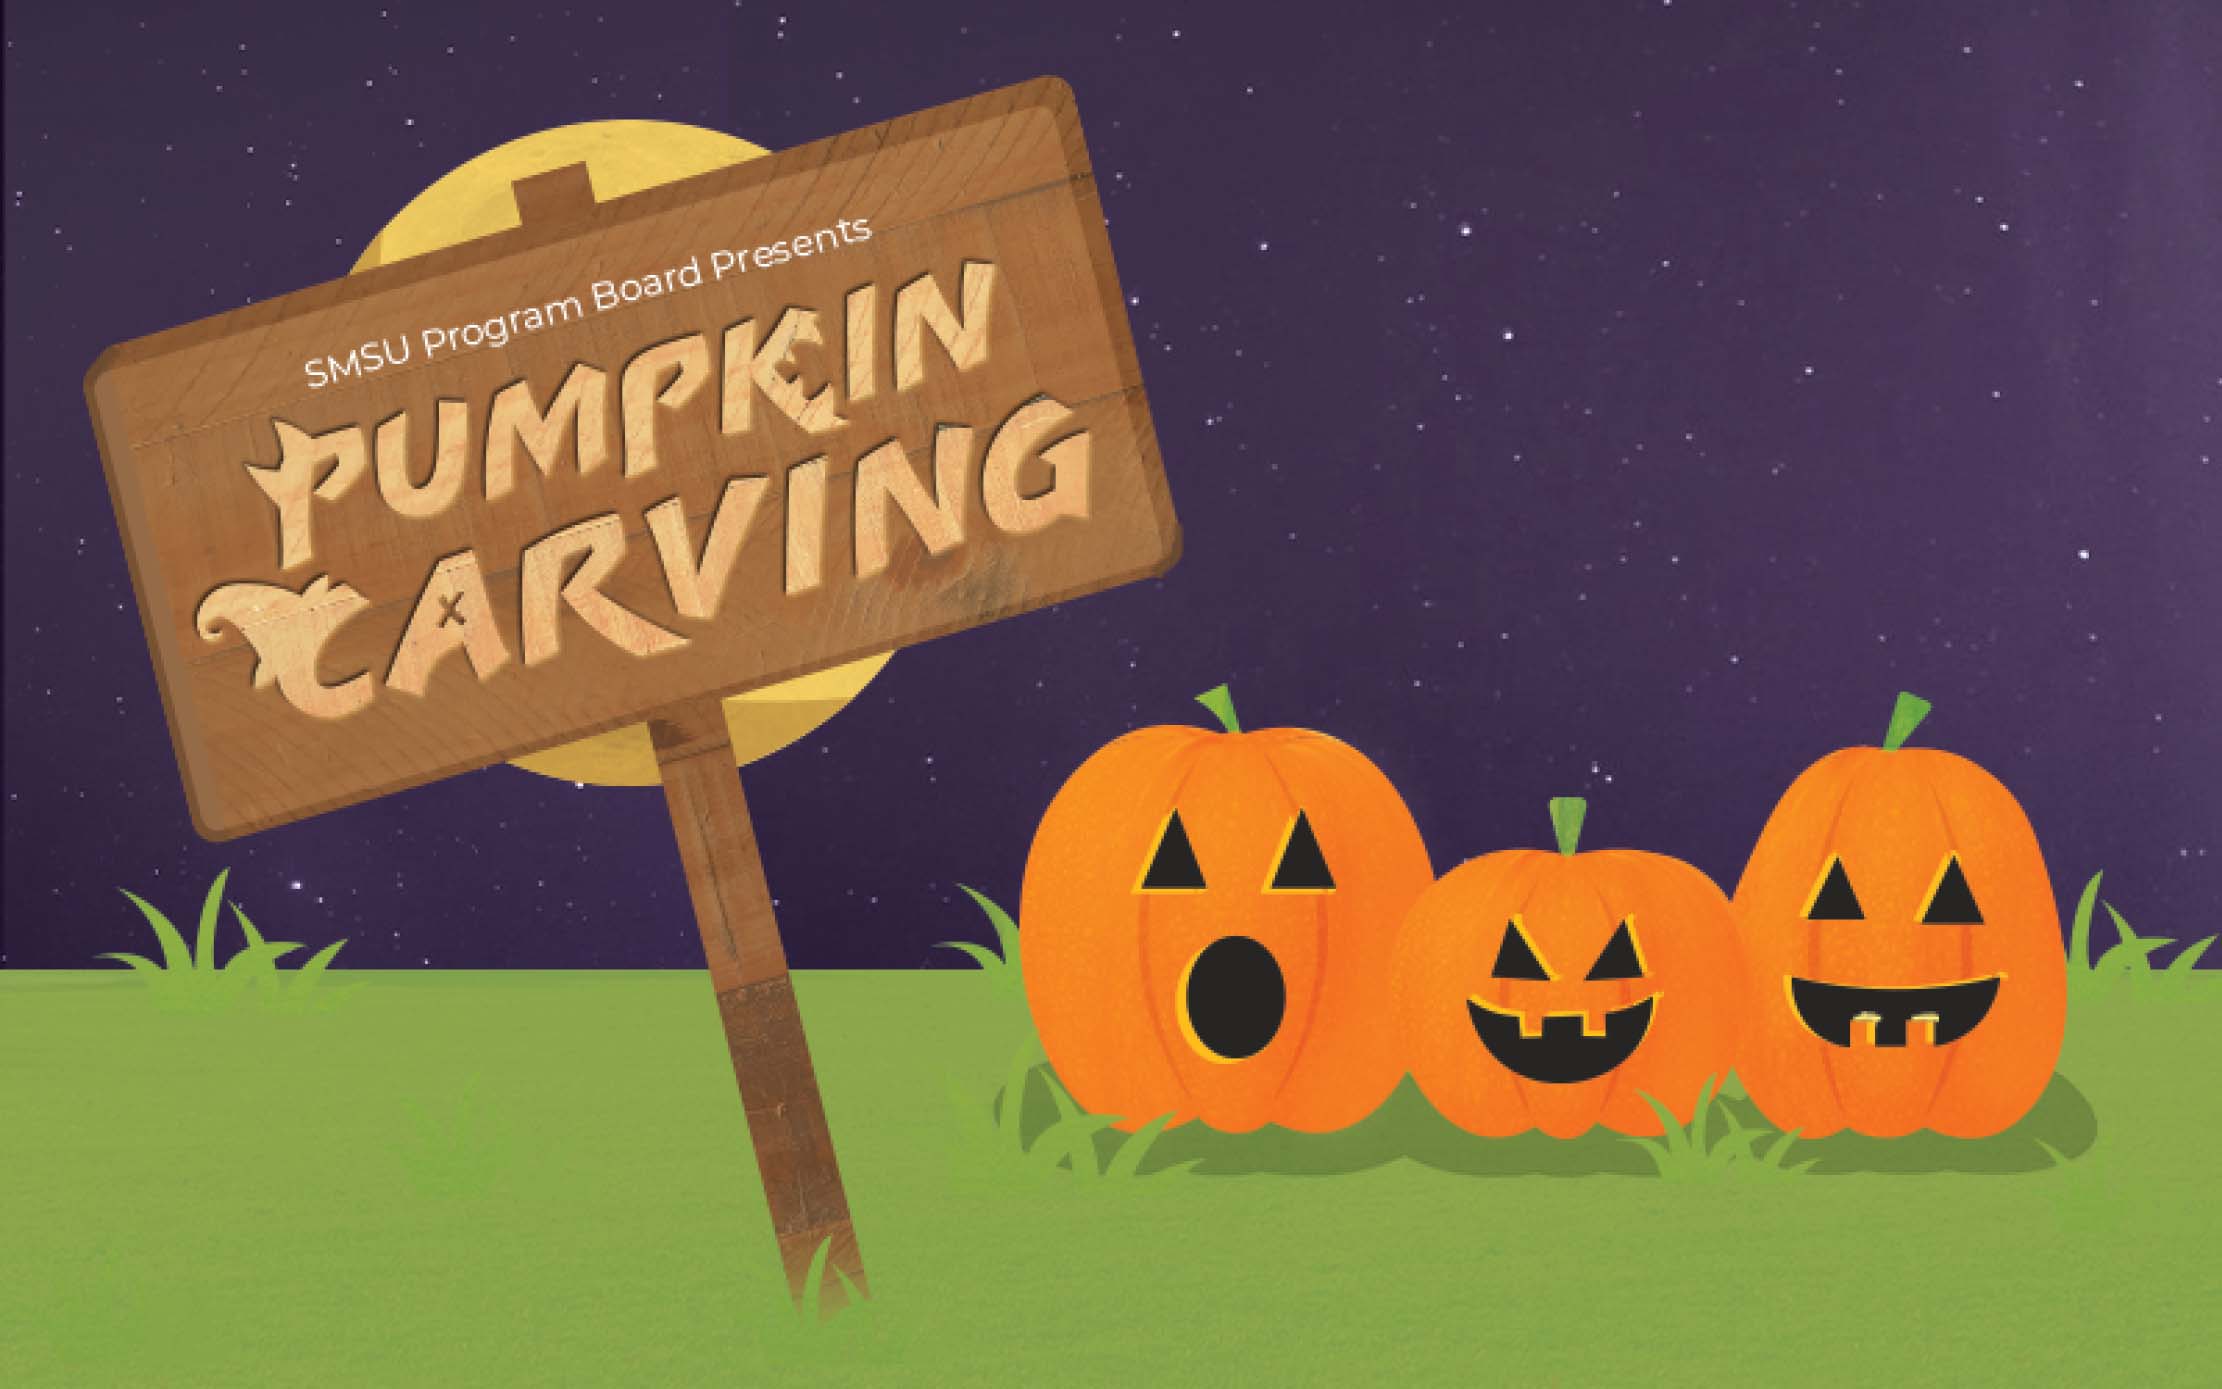 SMSU Program Board Presents "Pumpkin Carving"